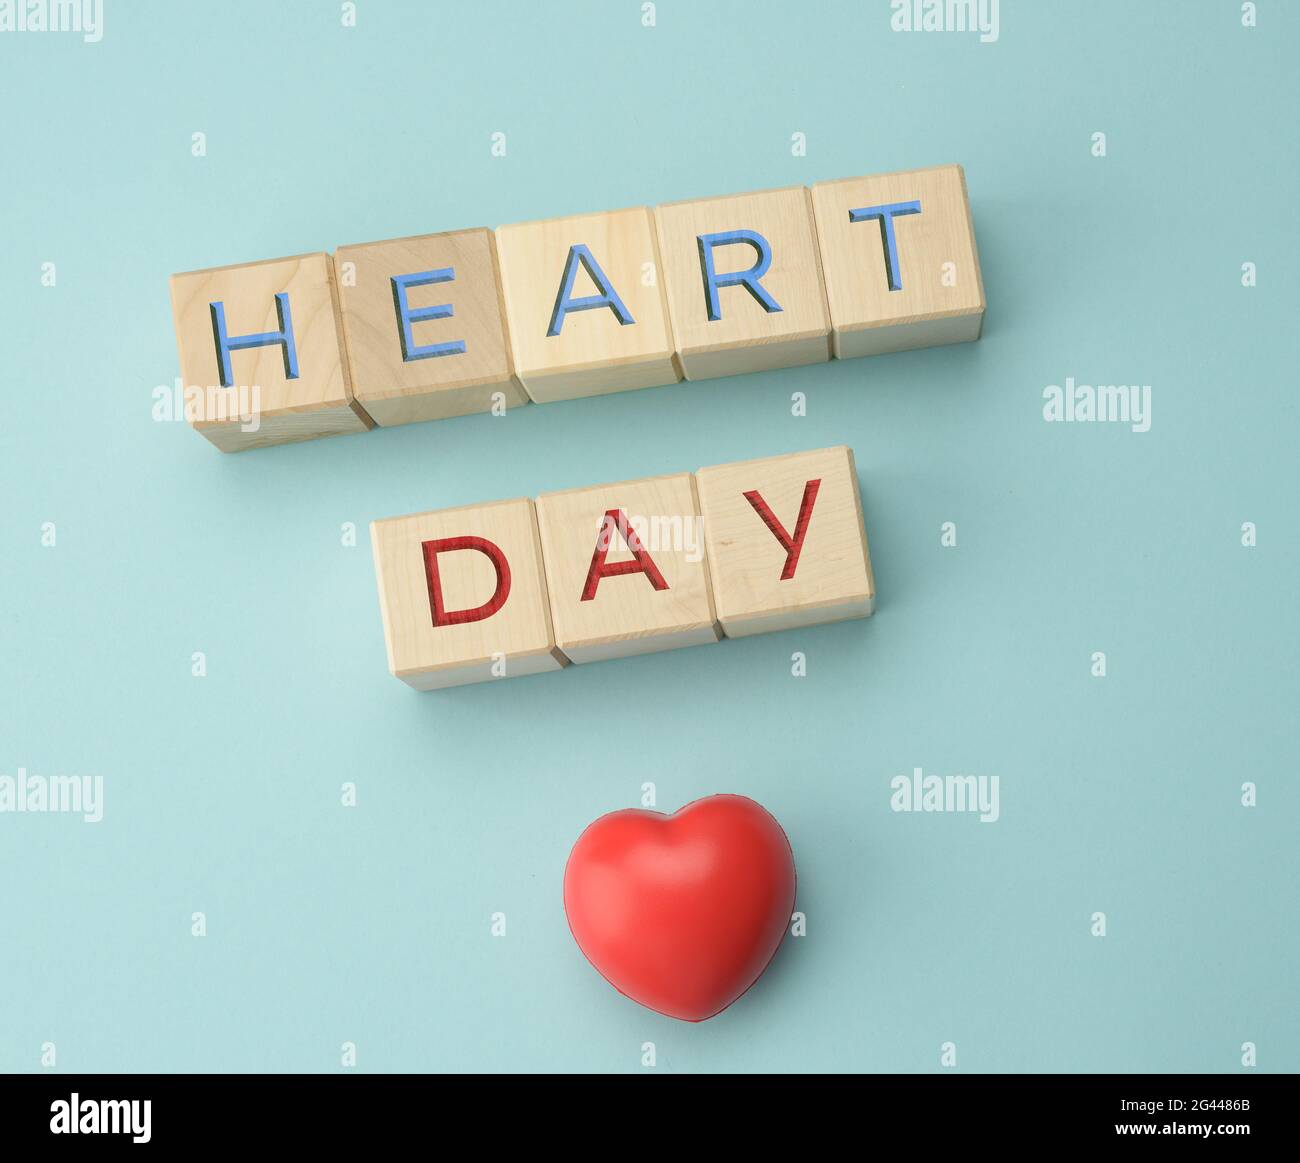 Blocs en bois avec inscription Heart Day sur fond bleu. Concept de soins de santé, contrôle annuel des organes humains Banque D'Images